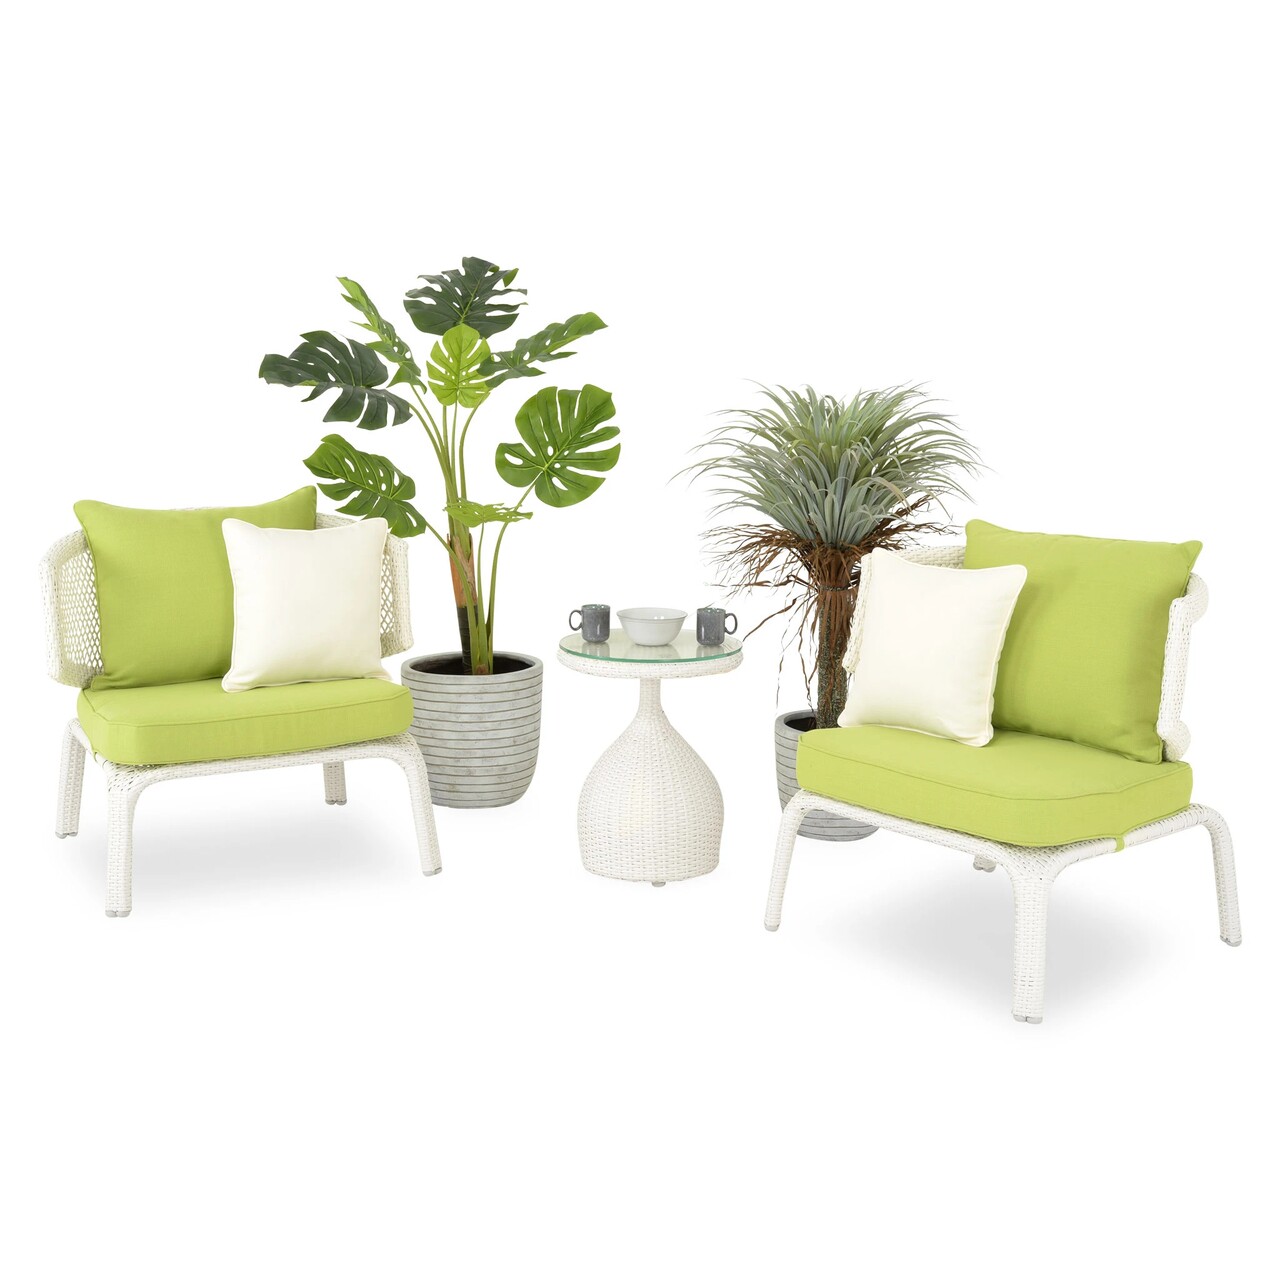 Maison cerres 2 db kerti/terasz fotel és asztalka, fehér/zöld